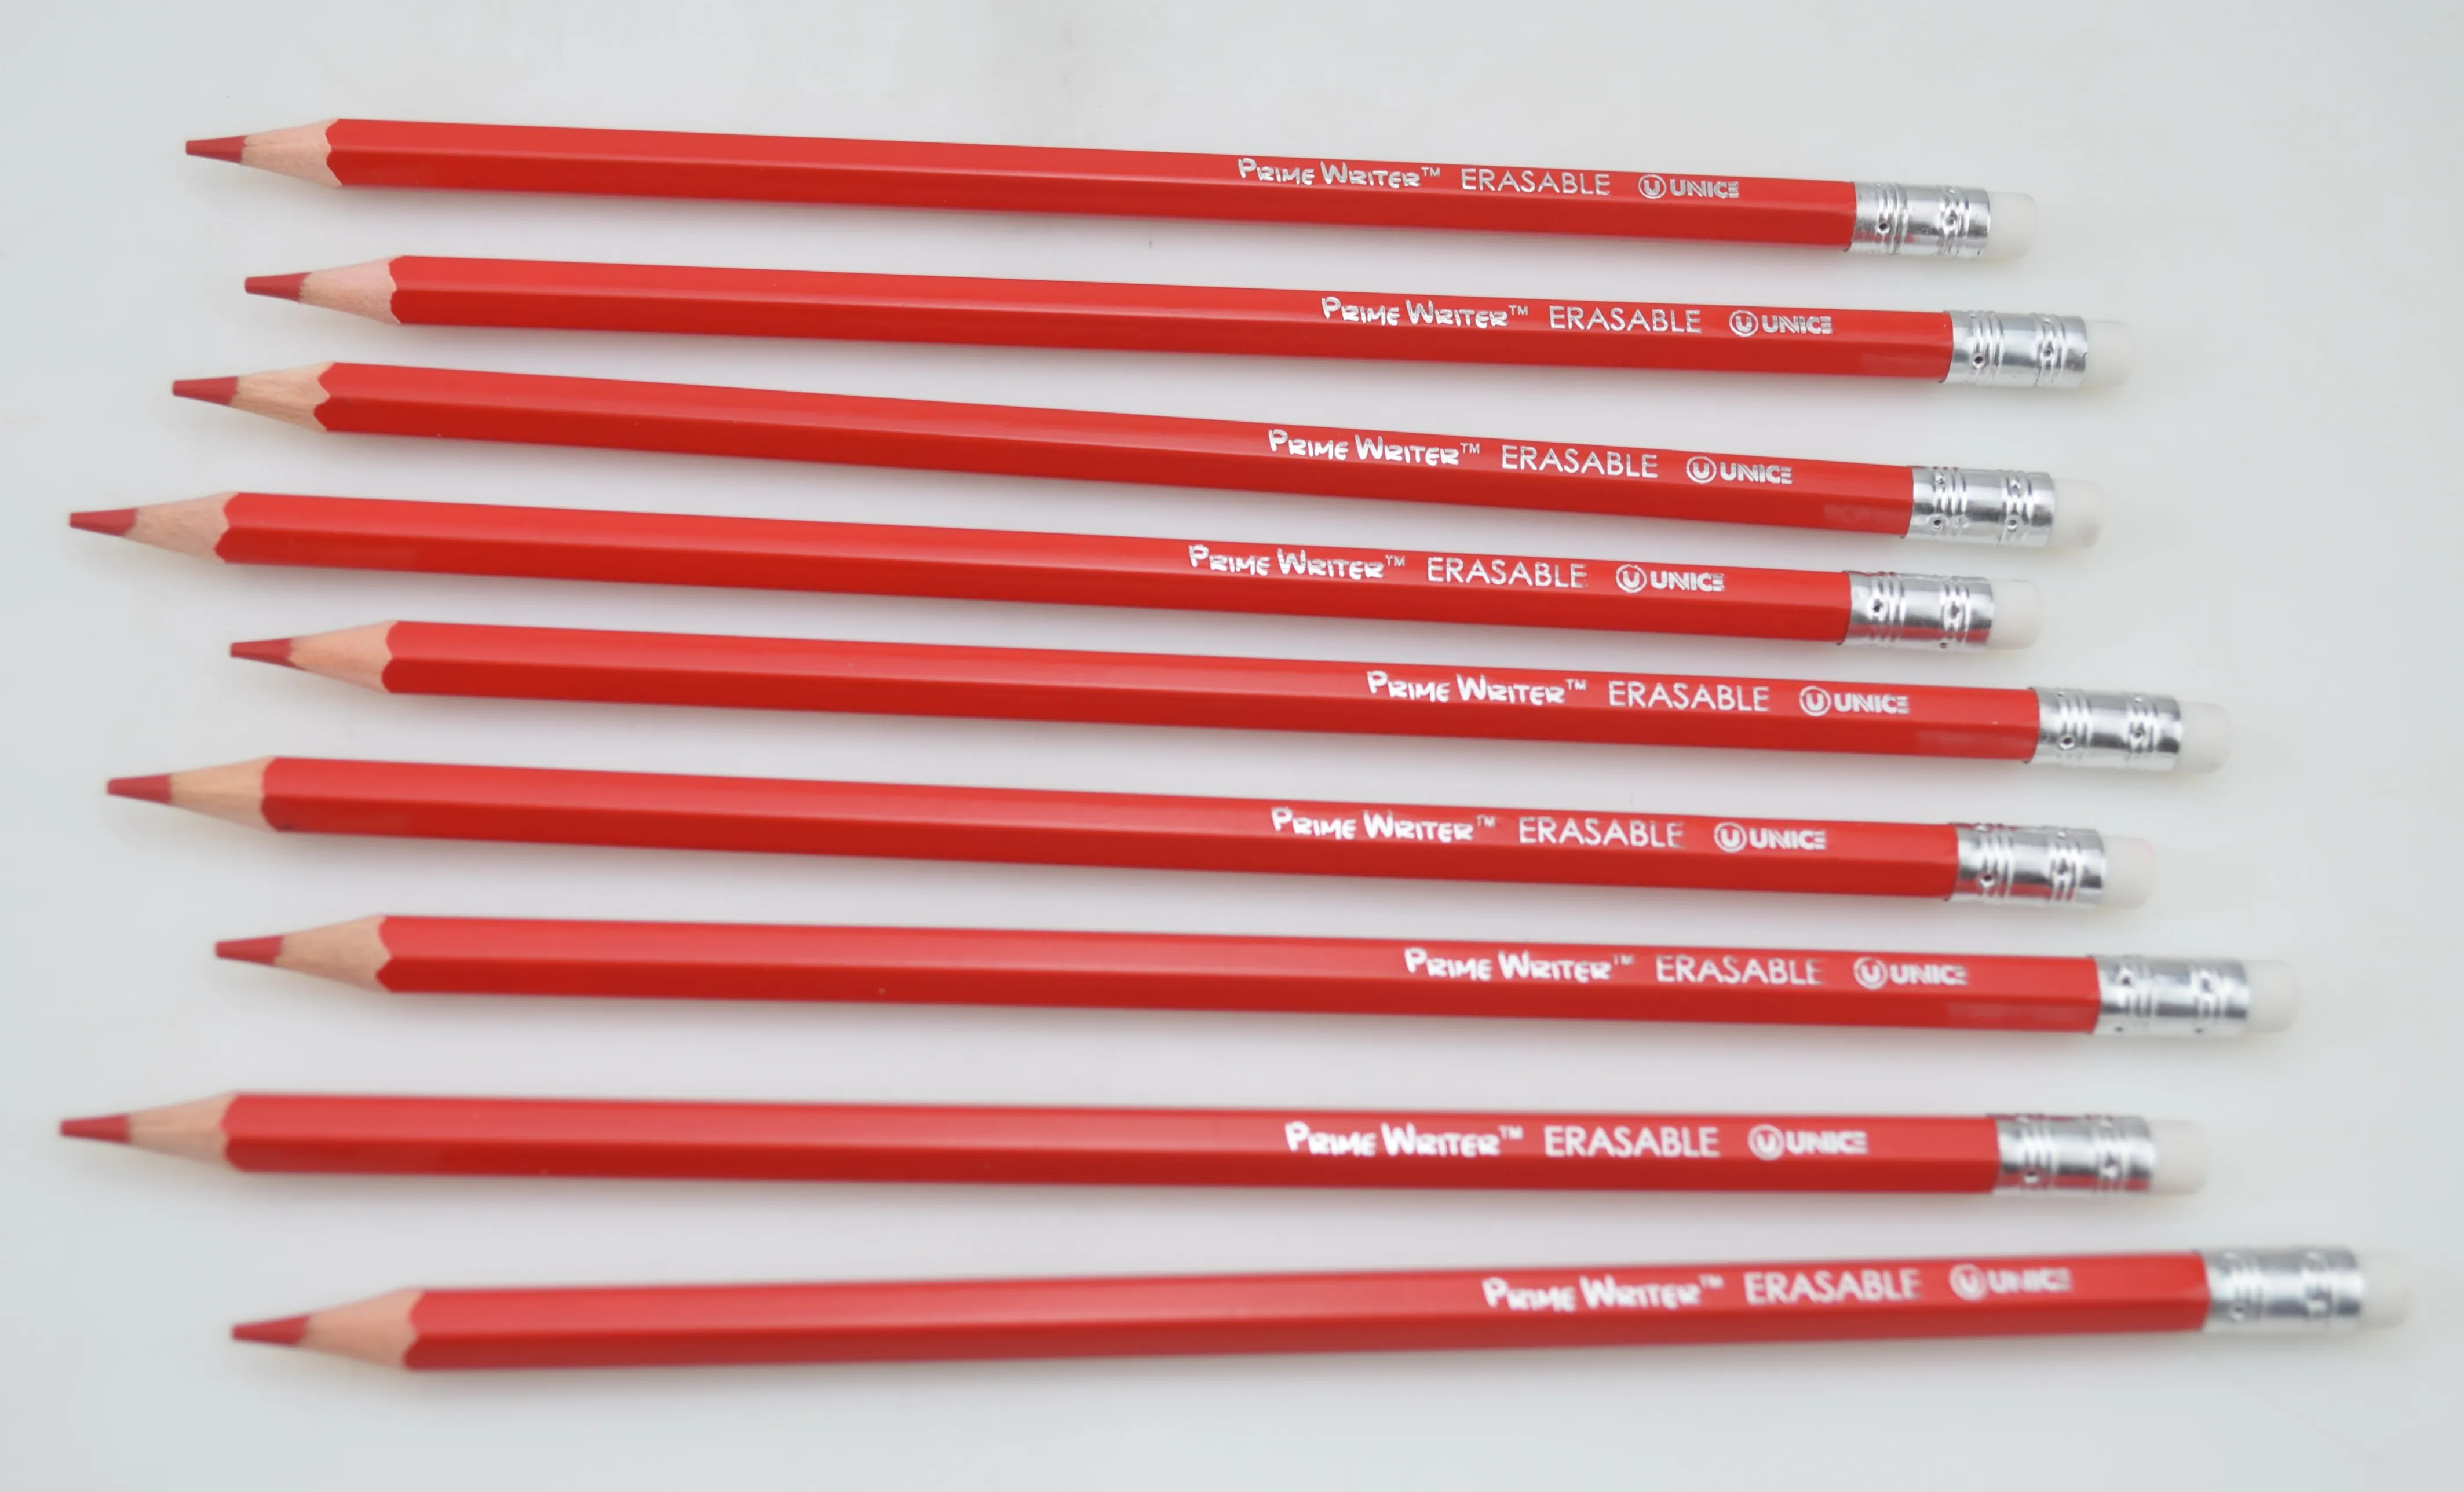 Красный карандаш для детей